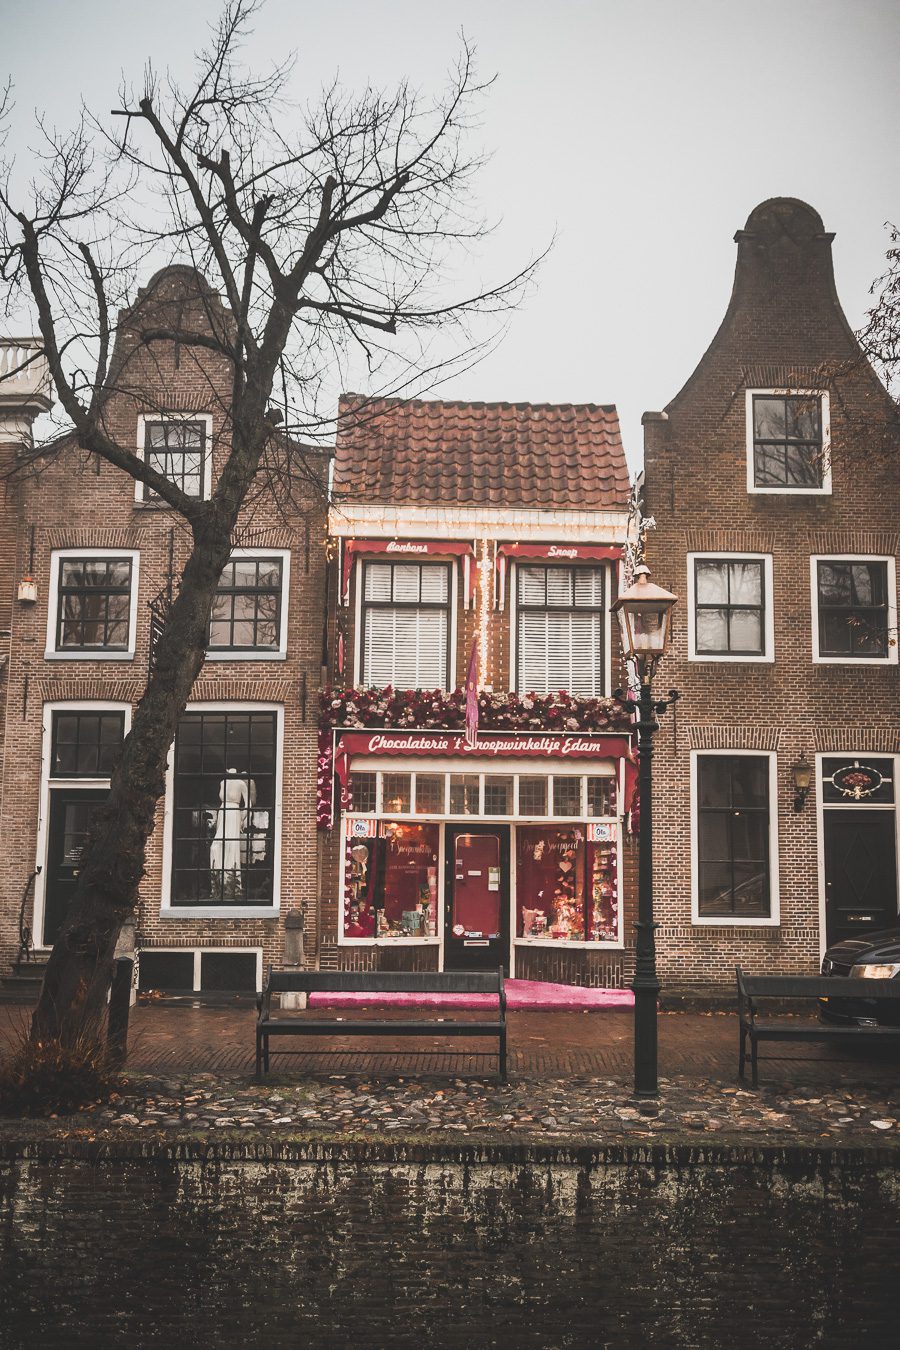 Edam est une ville pittoresque de la province de la Hollande du Nord aux Pays-Bas. Avec ses rues pavées, ses maisons hollandaises colorées et ses anciens canaux, Edam est une destination populaire pour les touristes. Que vous recherchiez une évasion paisible de l'agitation de la vie urbaine ou une expérience culturelle unique, Edam a quelque chose pour tout le monde. De sa riche histoire à son charme pittoresque, vous serez certainement enchanté par cette charmante ville hollandaise !